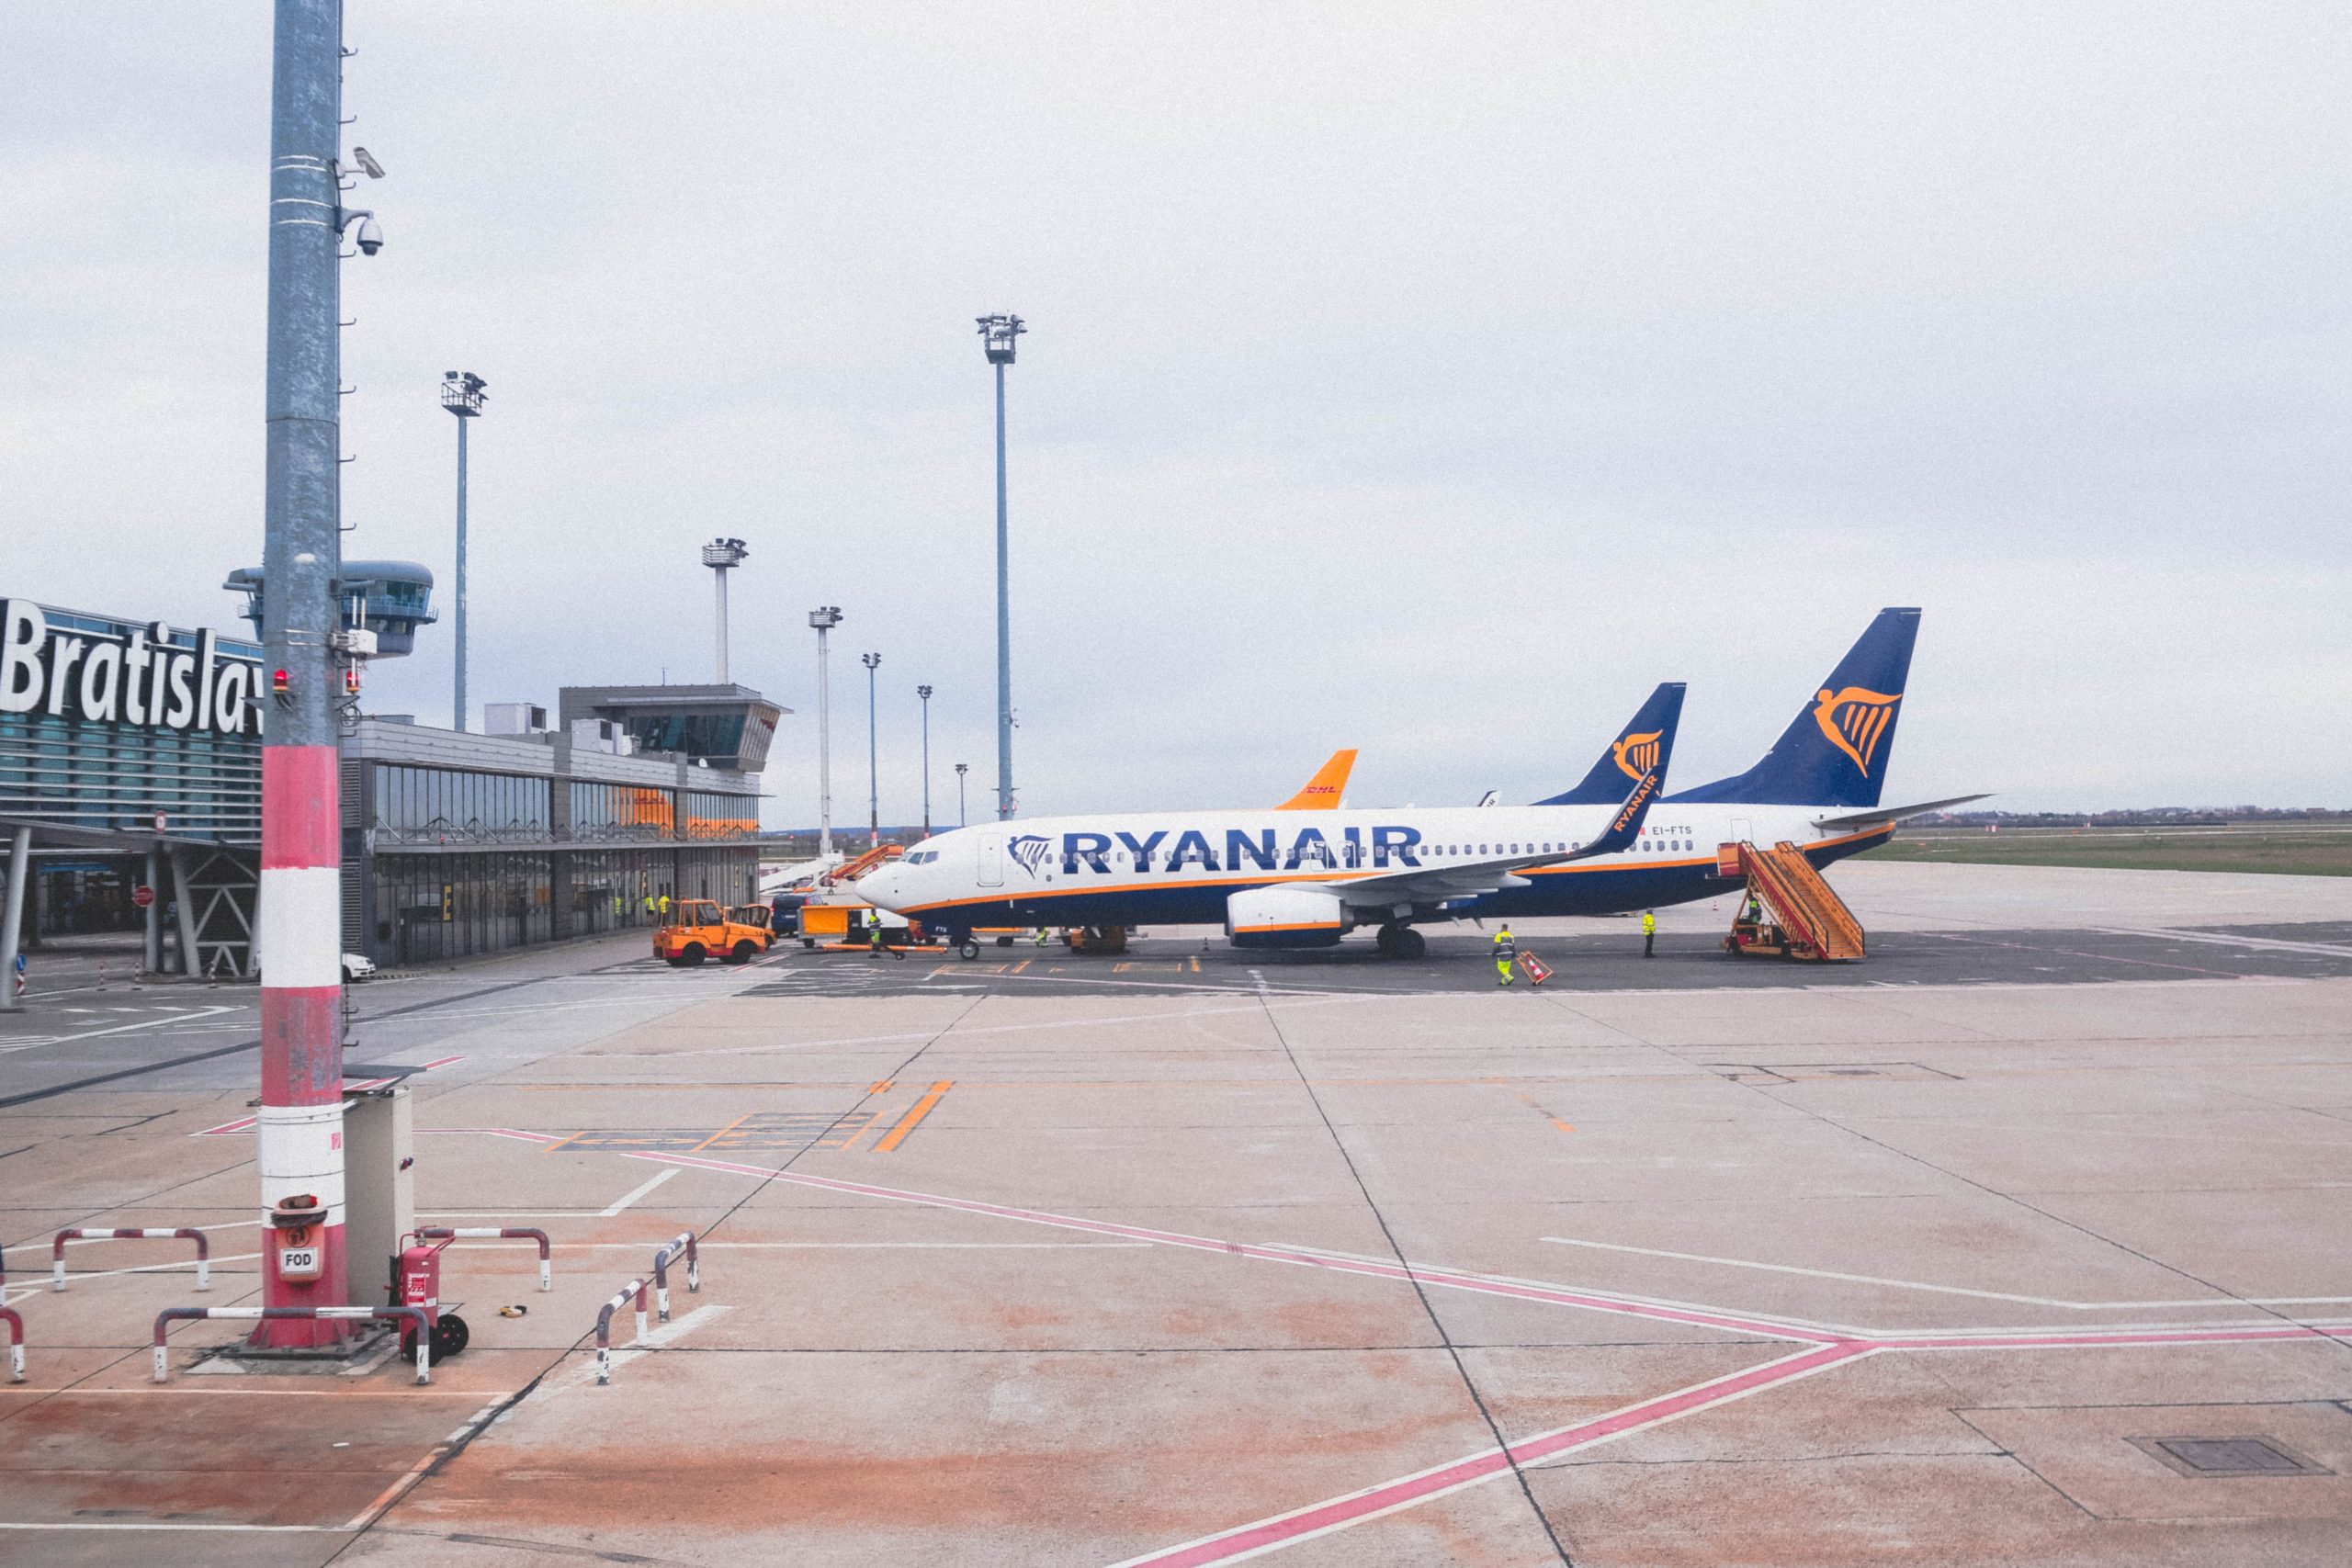 Des avions de la compagnie Ryanair à Bratislavia, en Slovaquie. Photo : unsplash